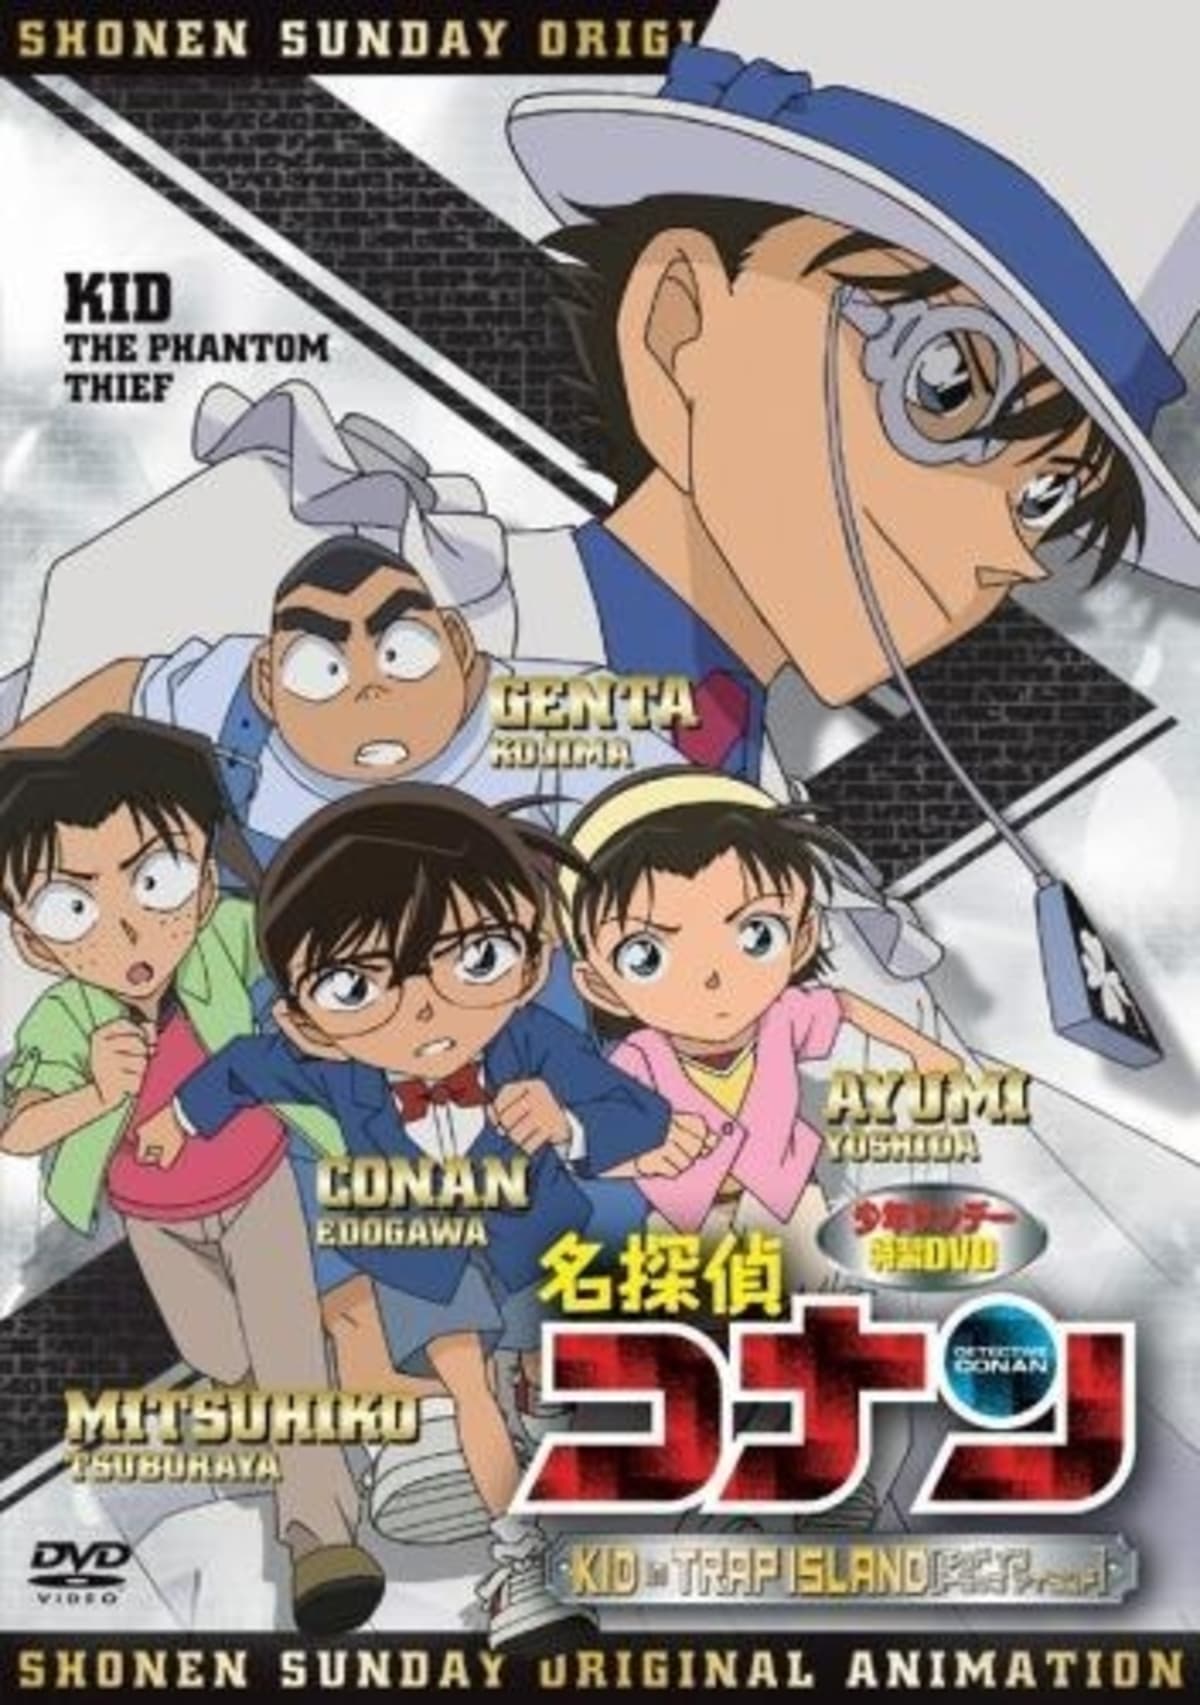 Detective Conan OVA 10 - Kid in Trap Island (2010)